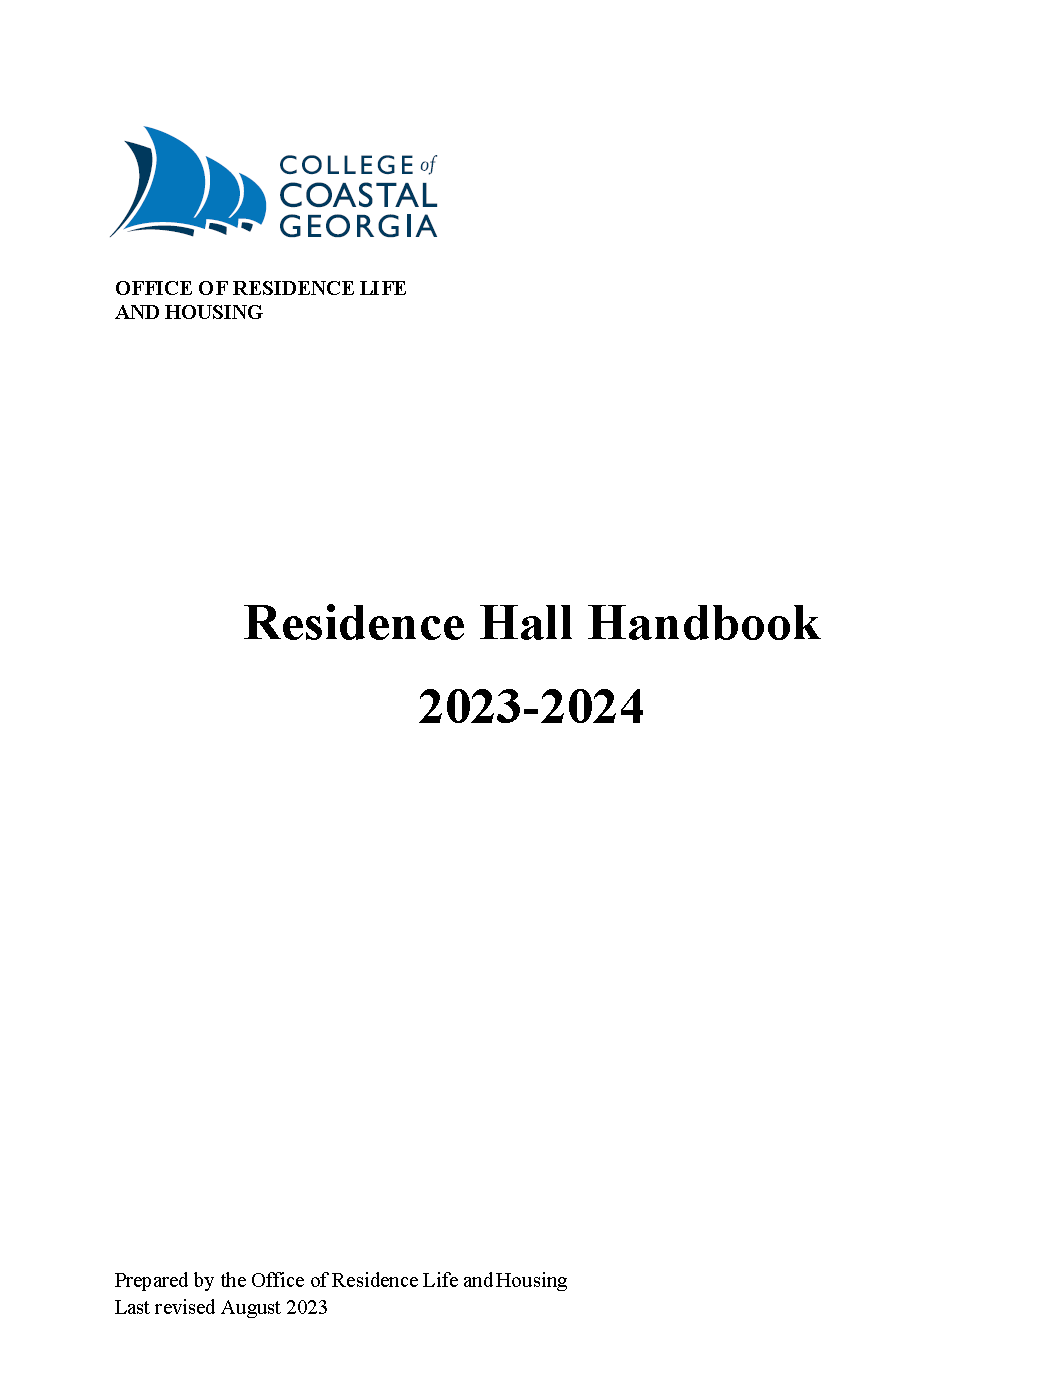 Residence Hall Handbook PNG